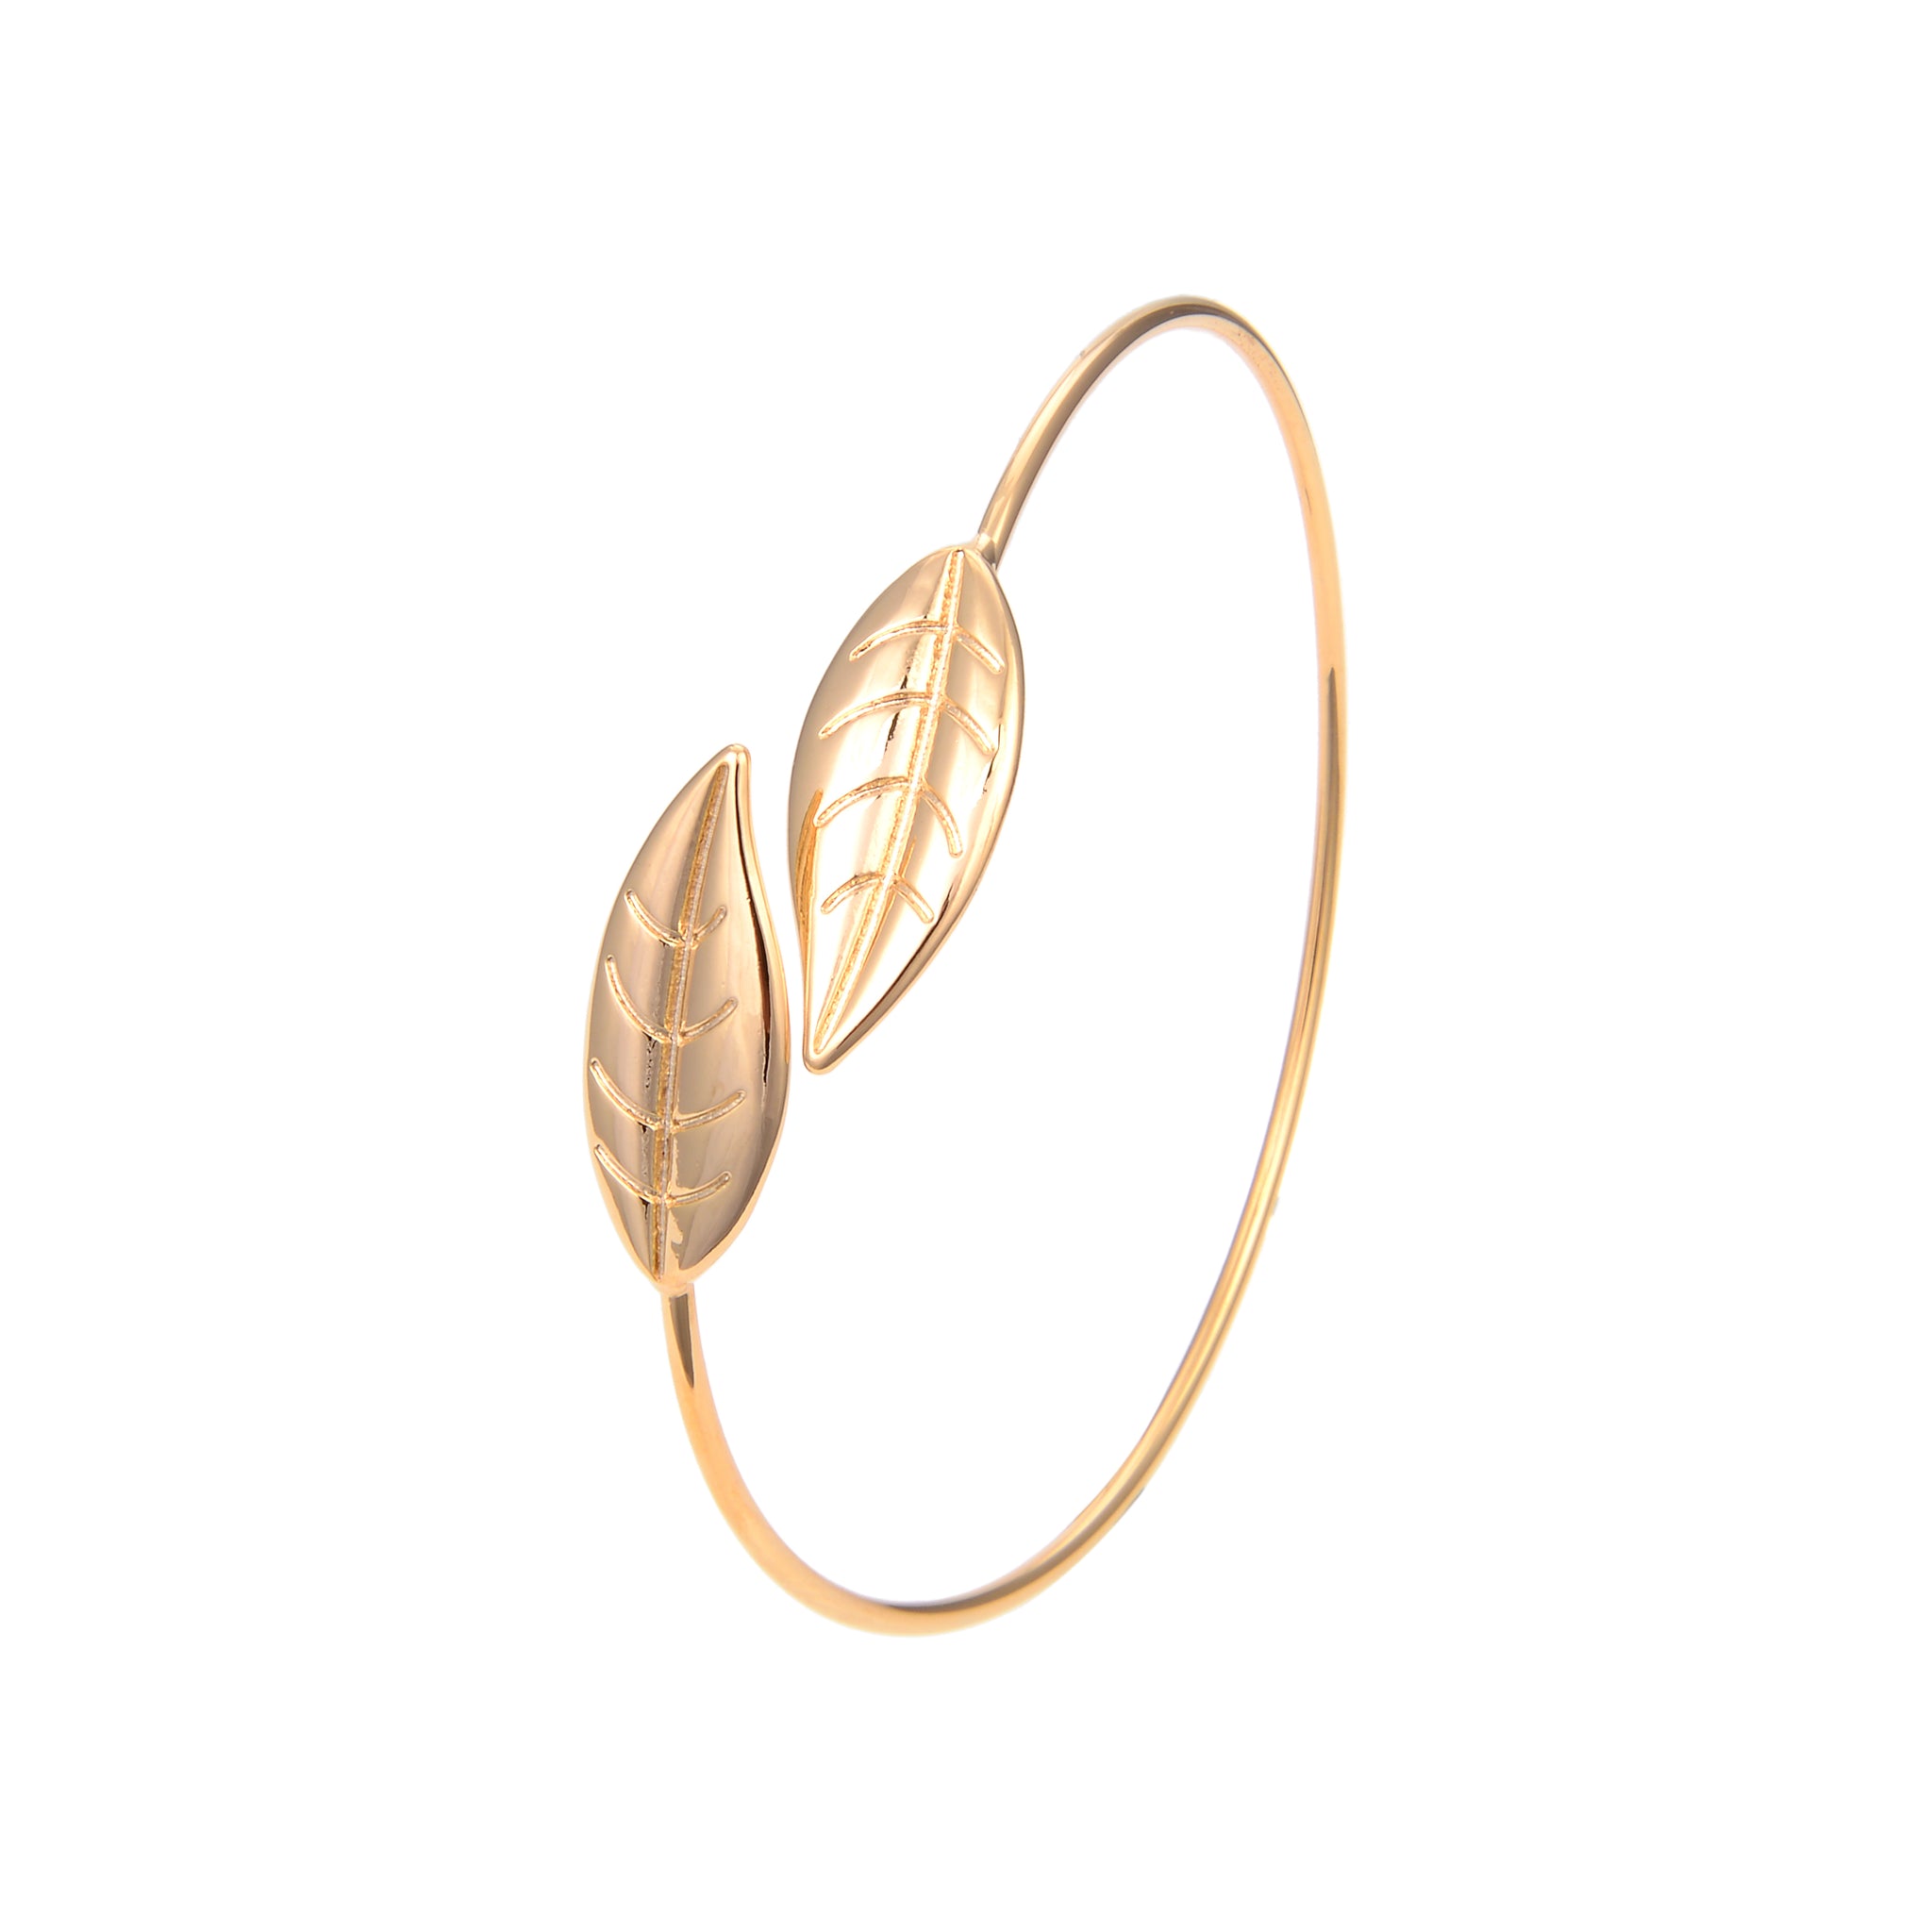 Gold Plated Bangle Bracelet, Gold Plated Leaf Shape Bangle Bracelet